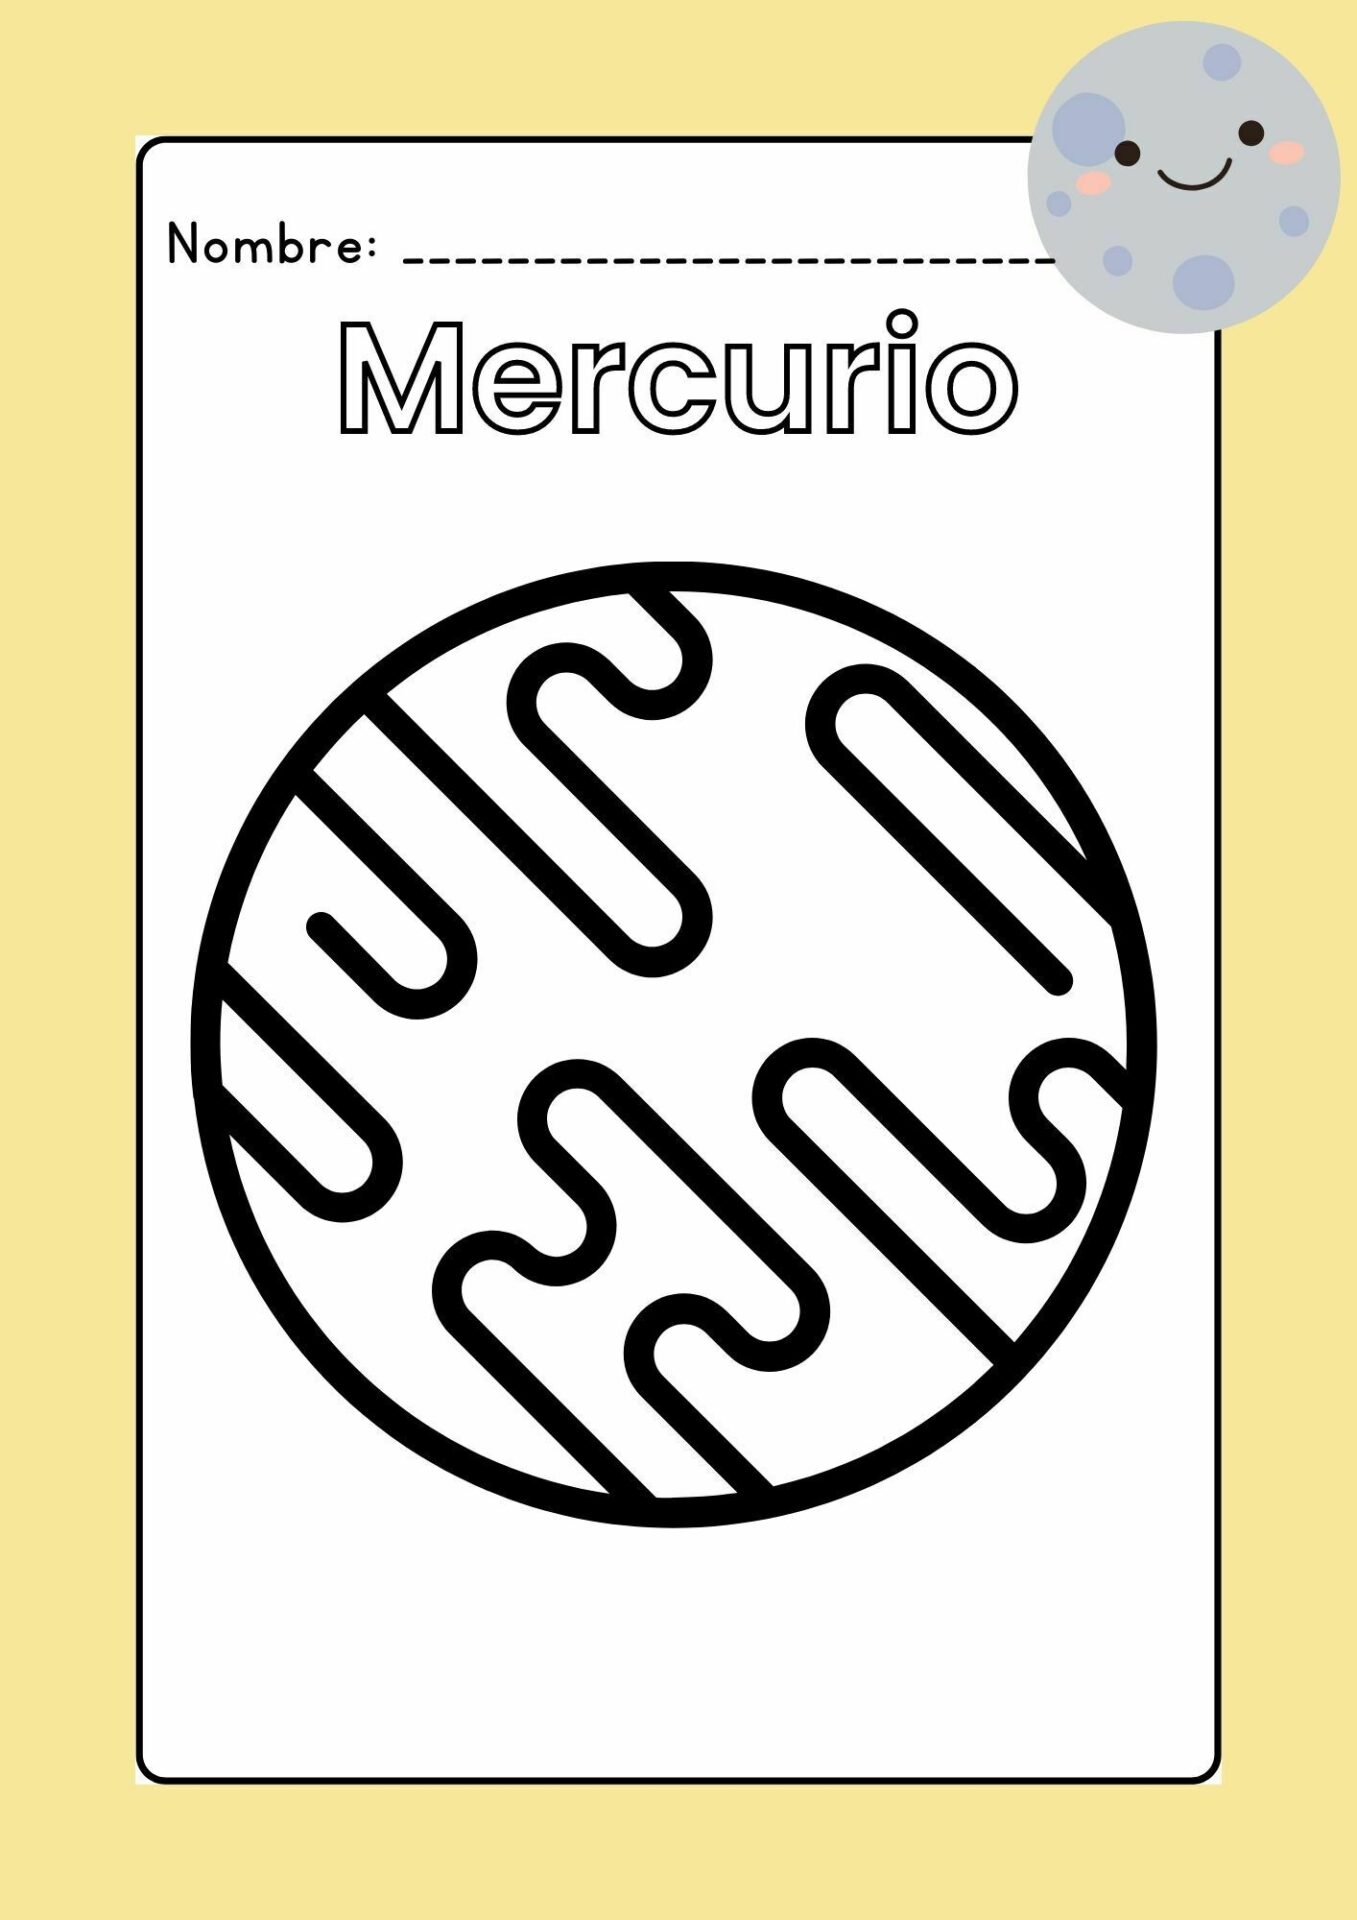 Imagen Mercurio